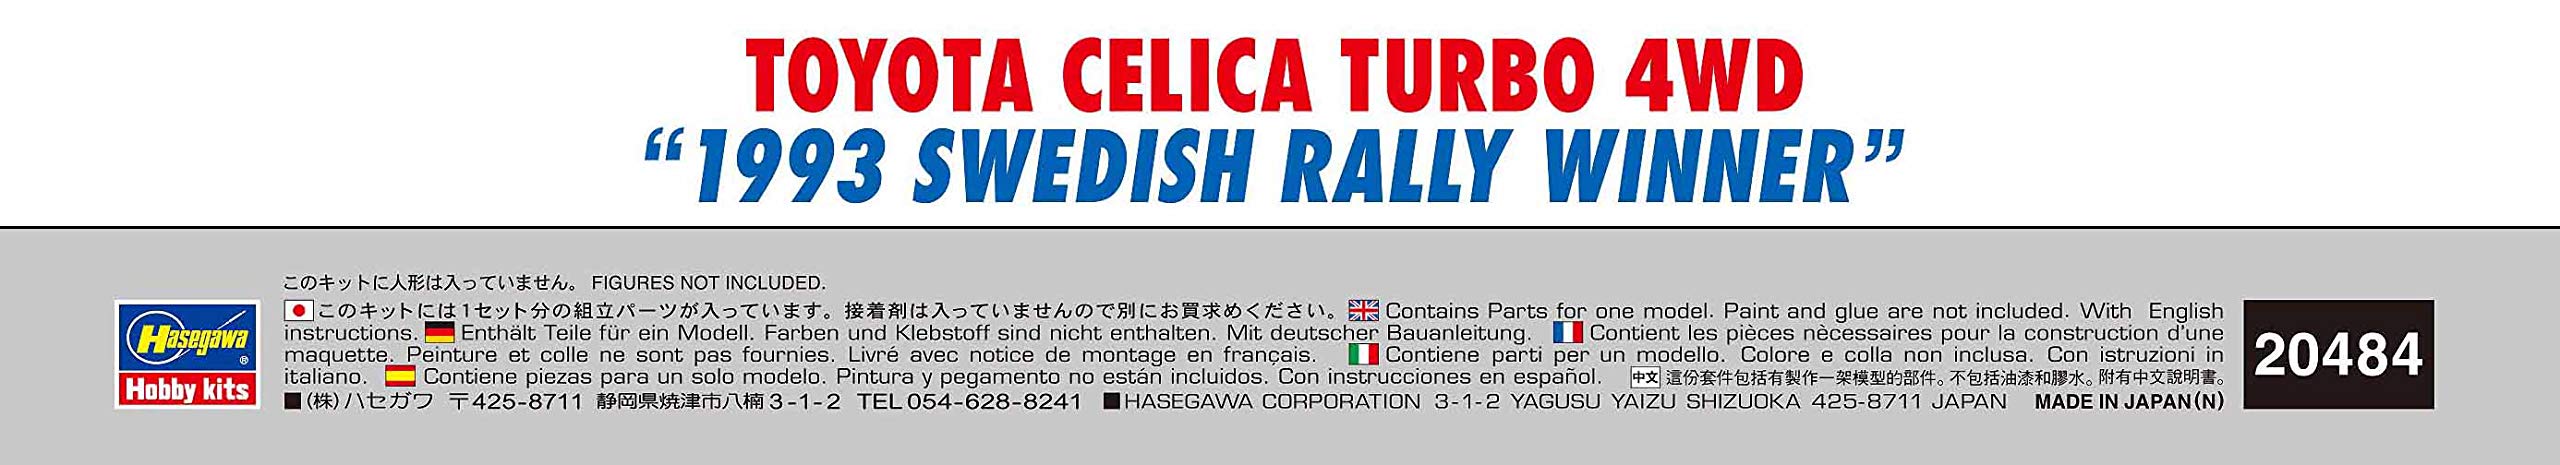 Hasegawa 1/24 Toyota Celica Turbo 4Wd 1993 Swedish Rally Winner Scale Racing Car